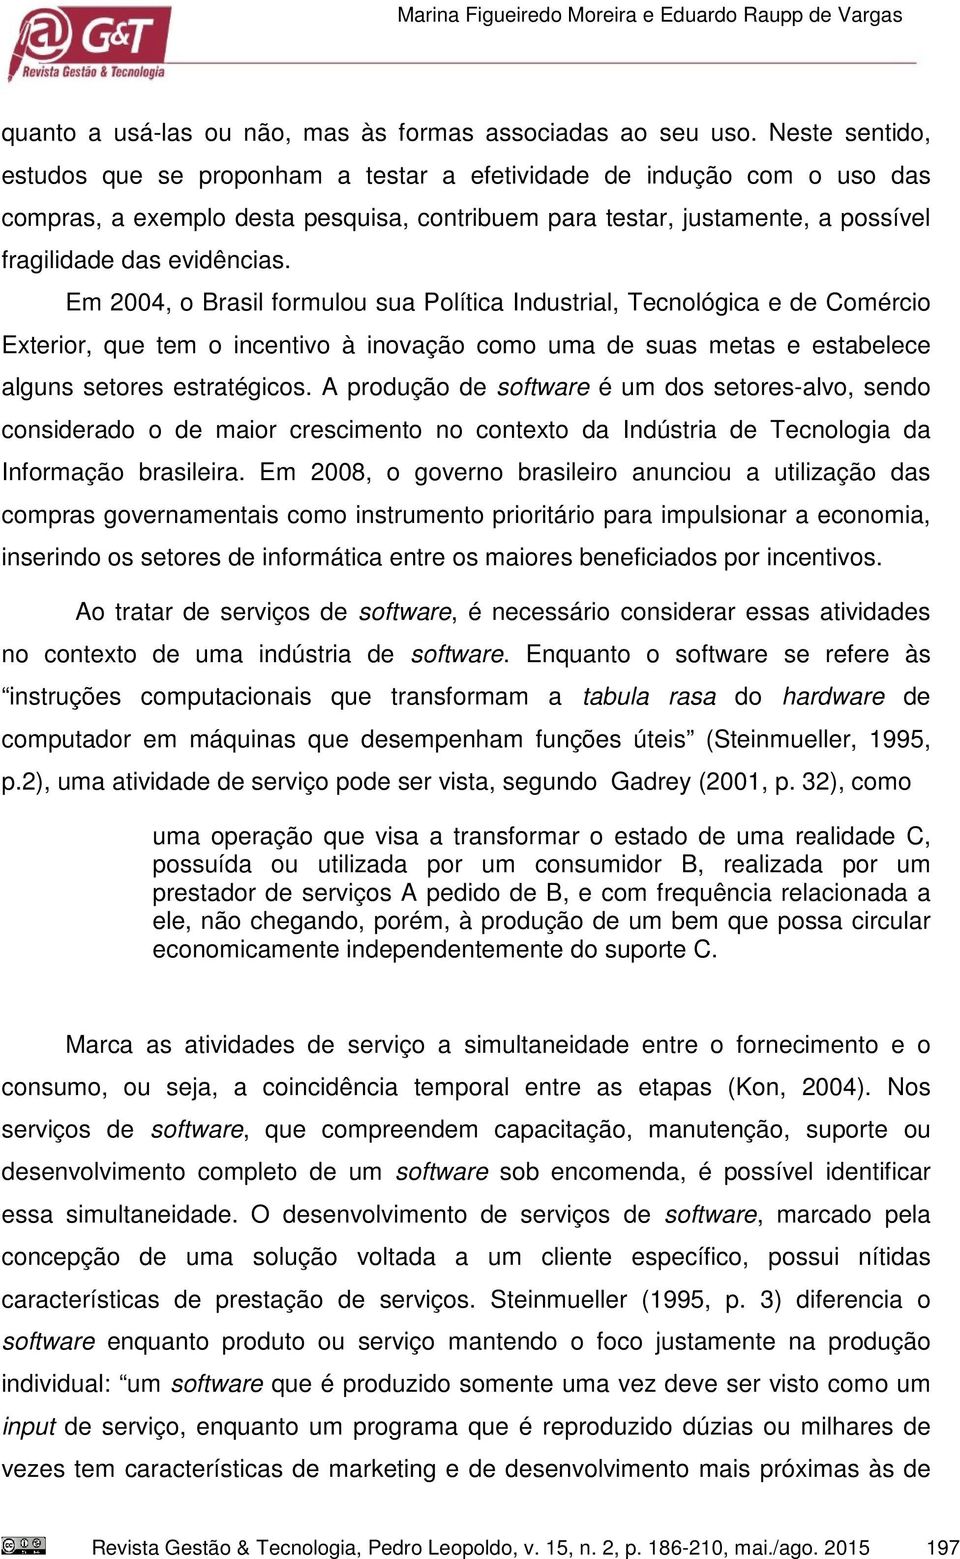 Em 2004, o Brasil formulou sua Política Industrial, Tecnológica e de Comércio Exterior, que tem o incentivo à inovação como uma de suas metas e estabelece alguns setores estratégicos.